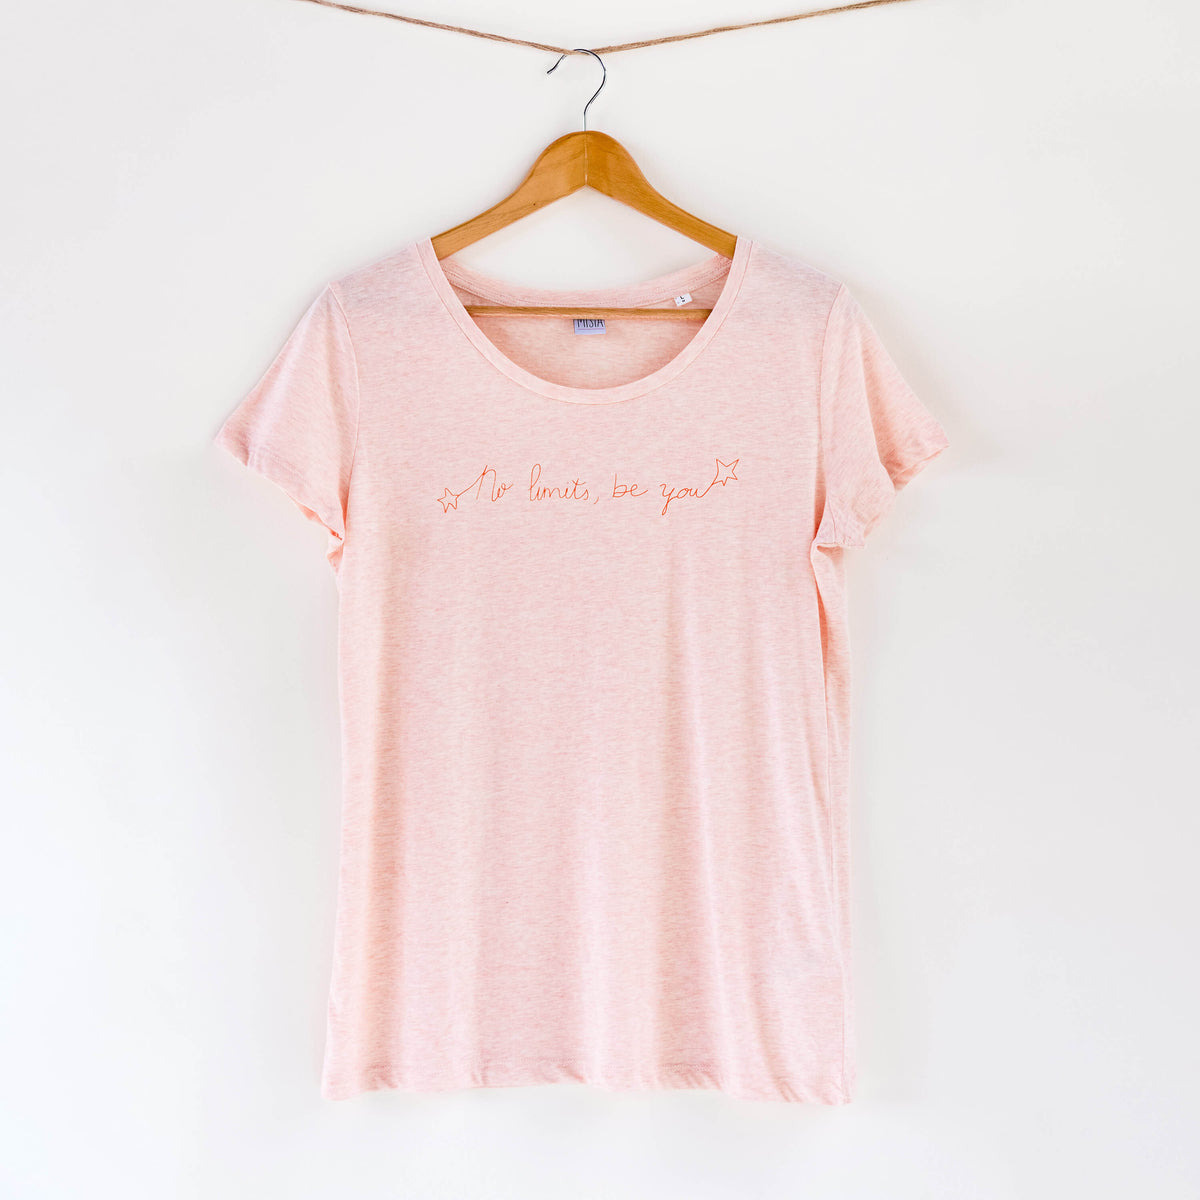 Camiseta rosa de mujer, de algodón orgánico y estampada a mano con tintas ecológicas. Texto estampado en color naranja.